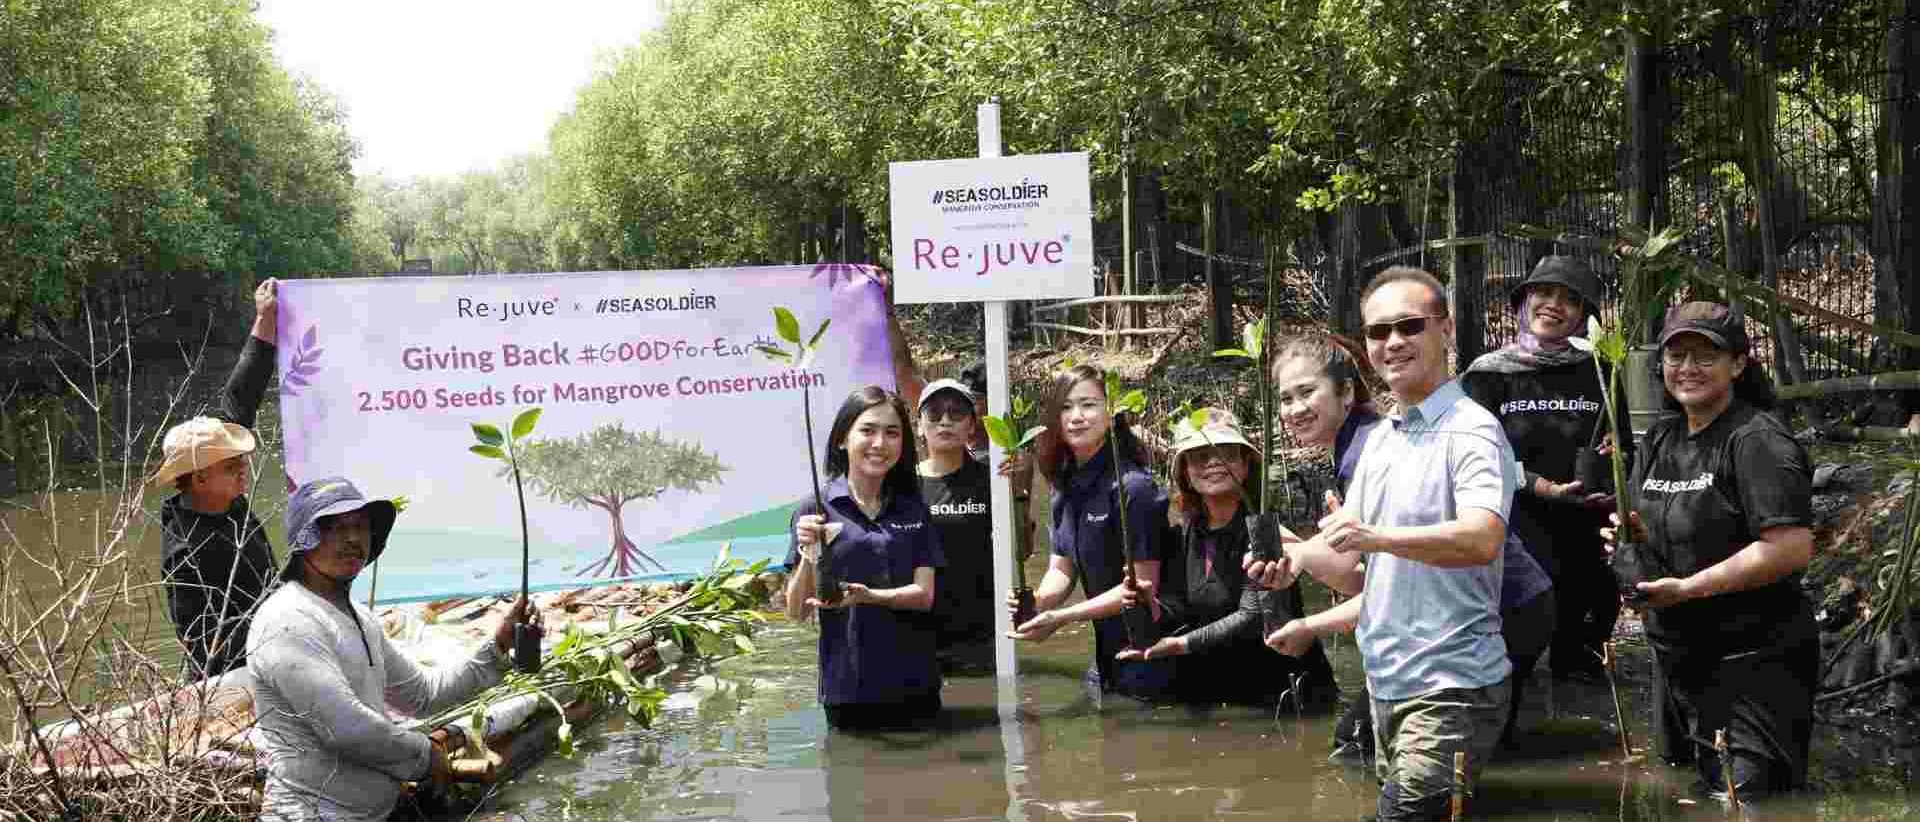 Melanjutkan Aksi Peduli Terhadap Lingkungan Re.juve Tanam 2.500 Bibit Mangrove Bersama Seasoldier